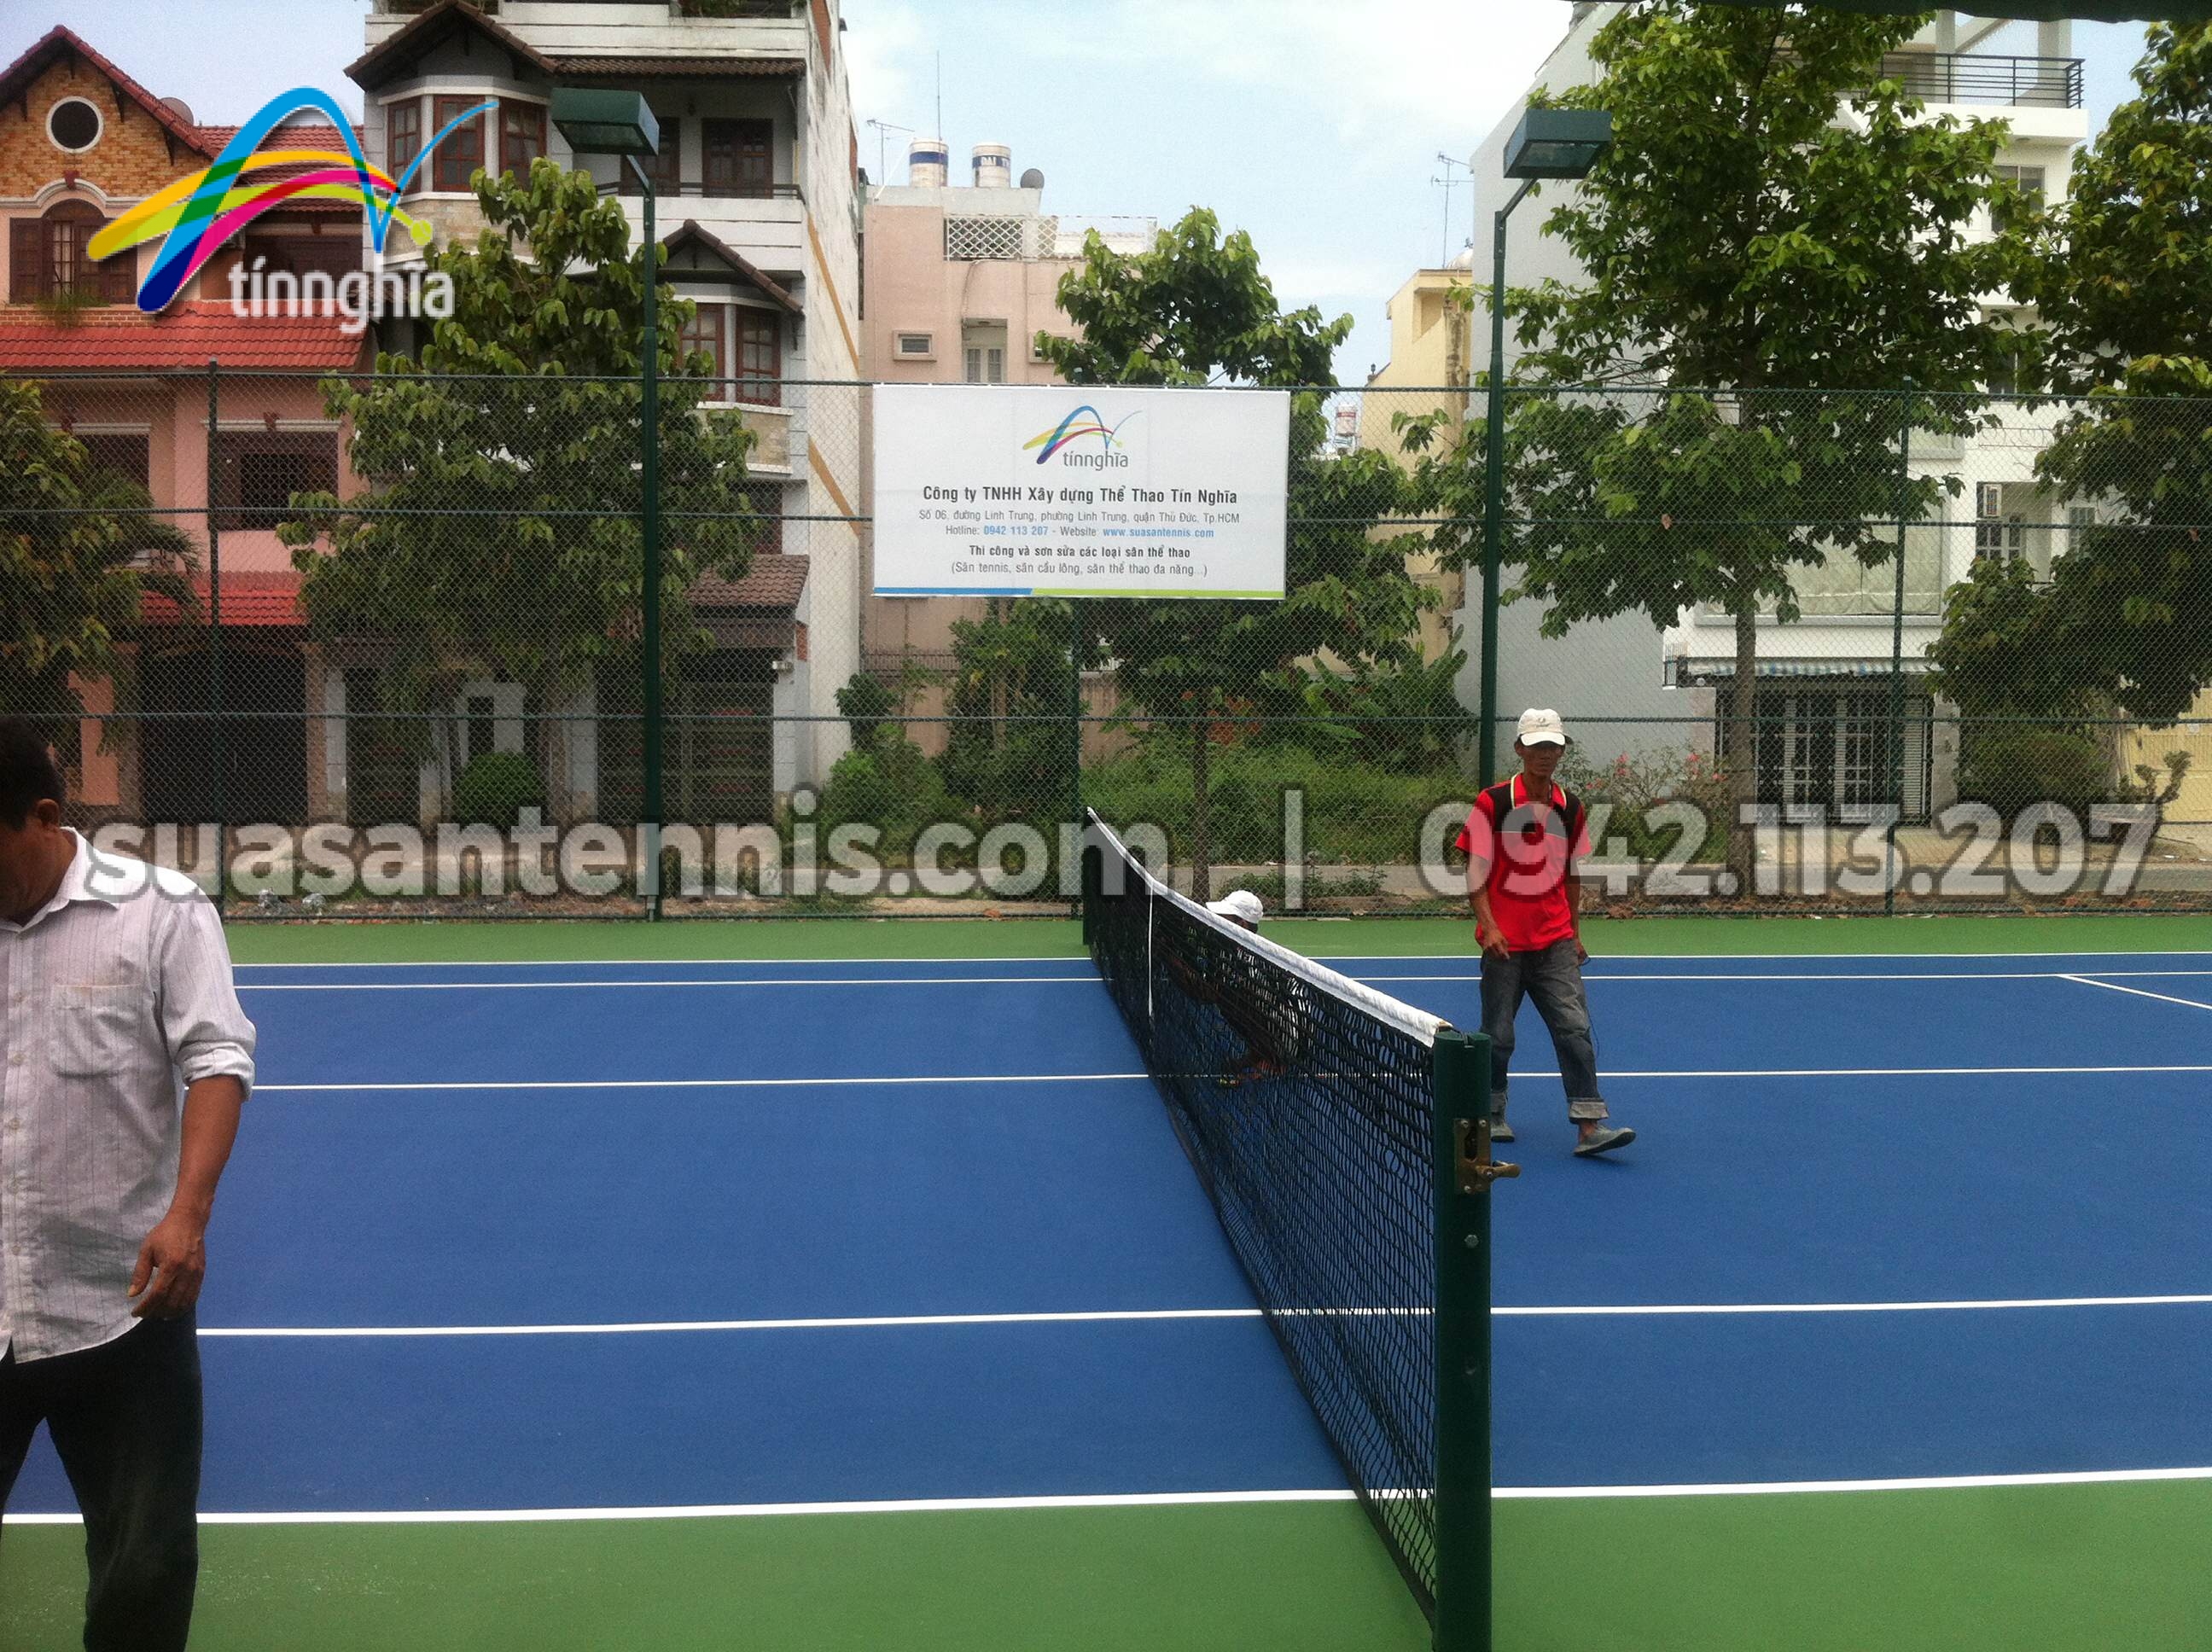 Construct 2 Tennis Courts "Ca Sau Hoa Ca" 2 - April 2015